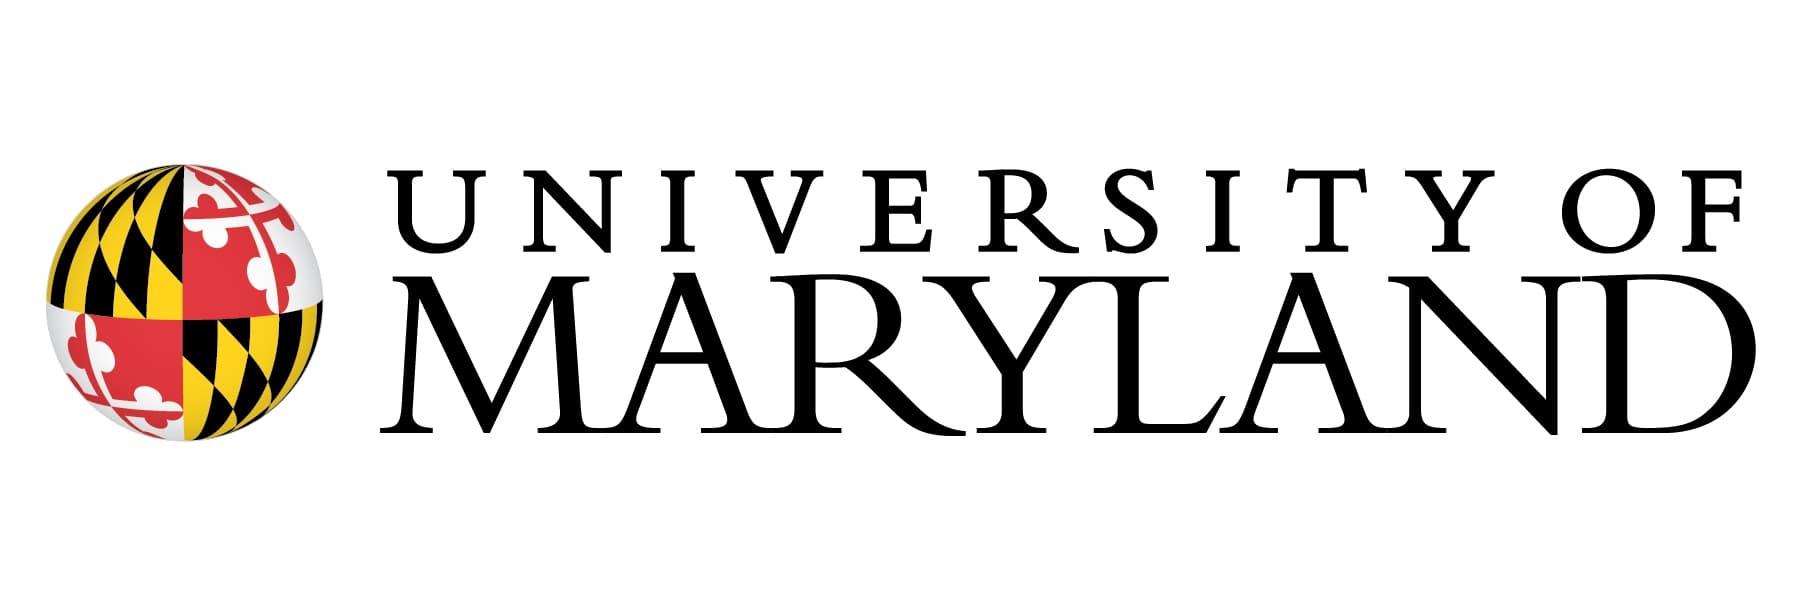 University of Maryland Primary logo